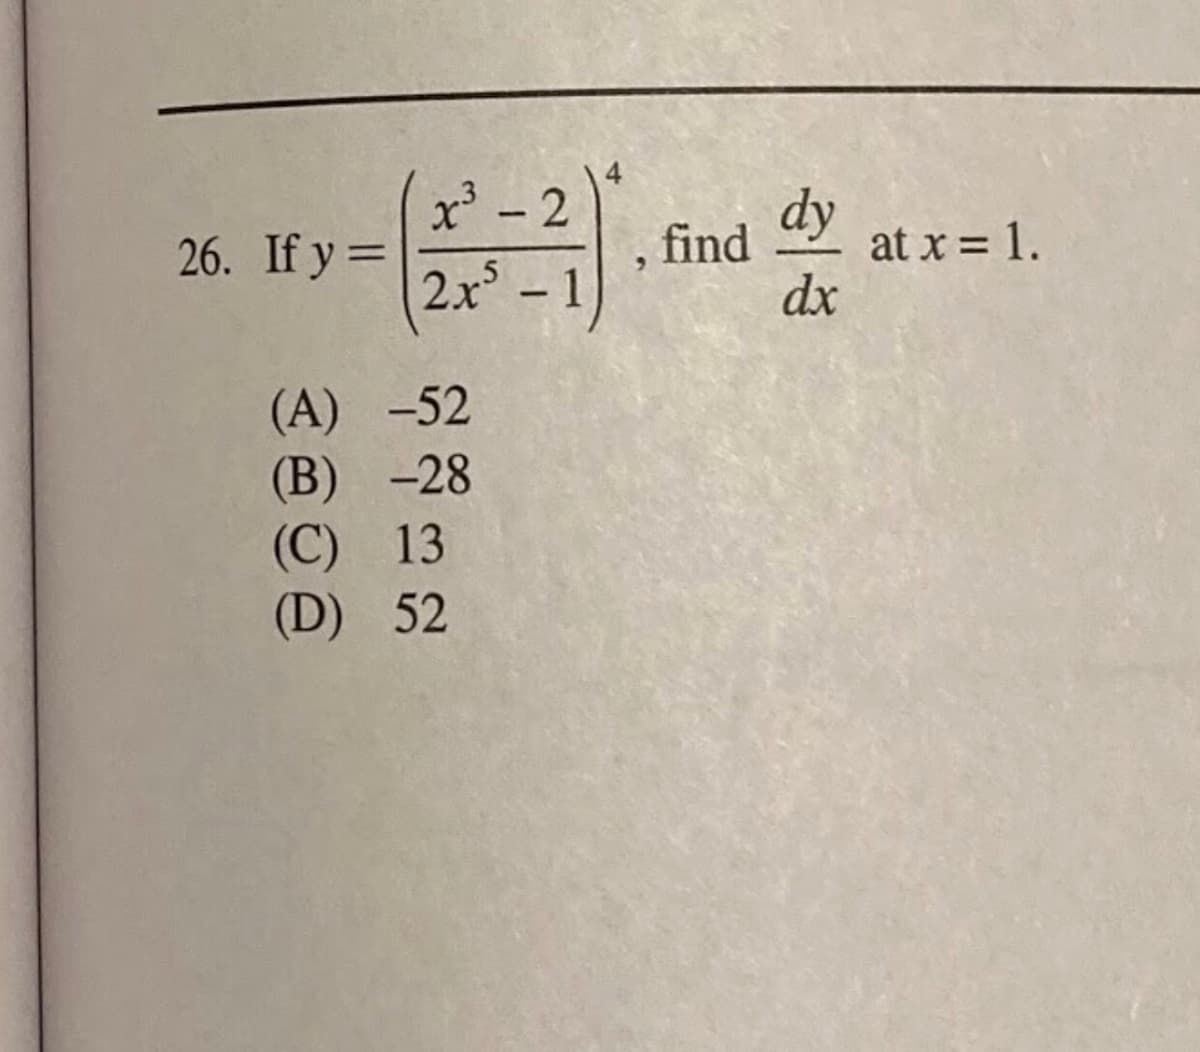 2
dy
ay at x = 1.
|
26. If y =
find
%3D
2x° – 1
dx
(A) -52
(B) -28
(C) 13
(D) 52
